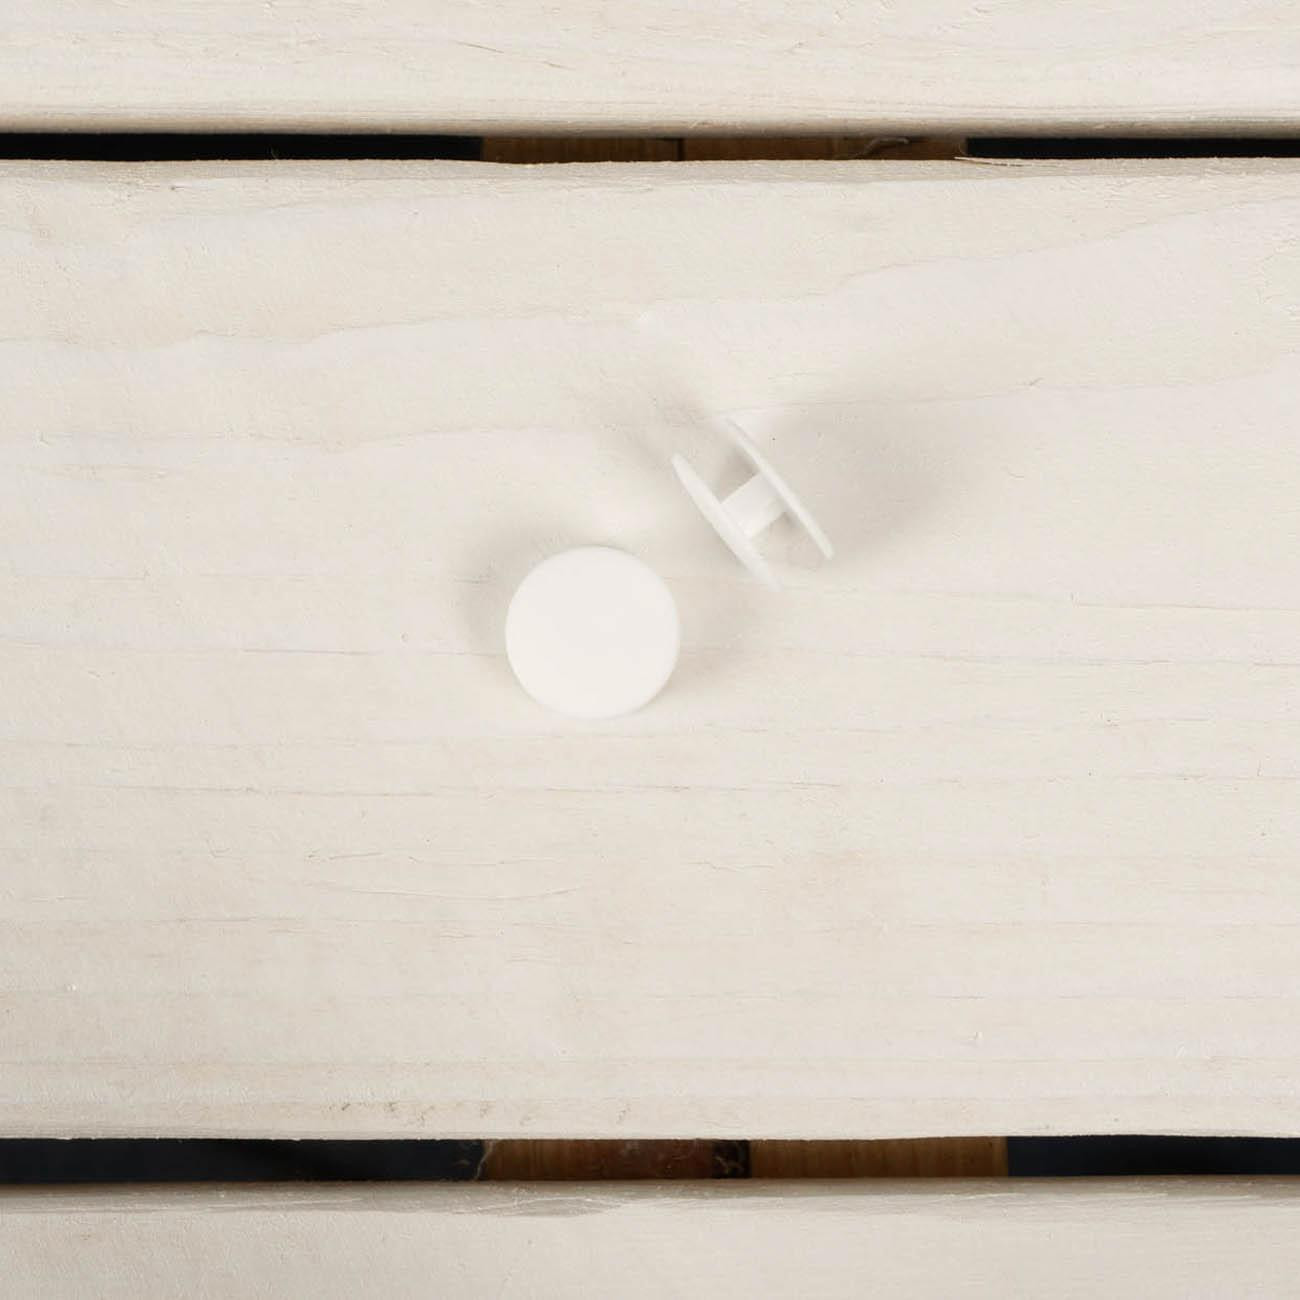 Knoflík - zapínání na lůžko 16 mm - bílý